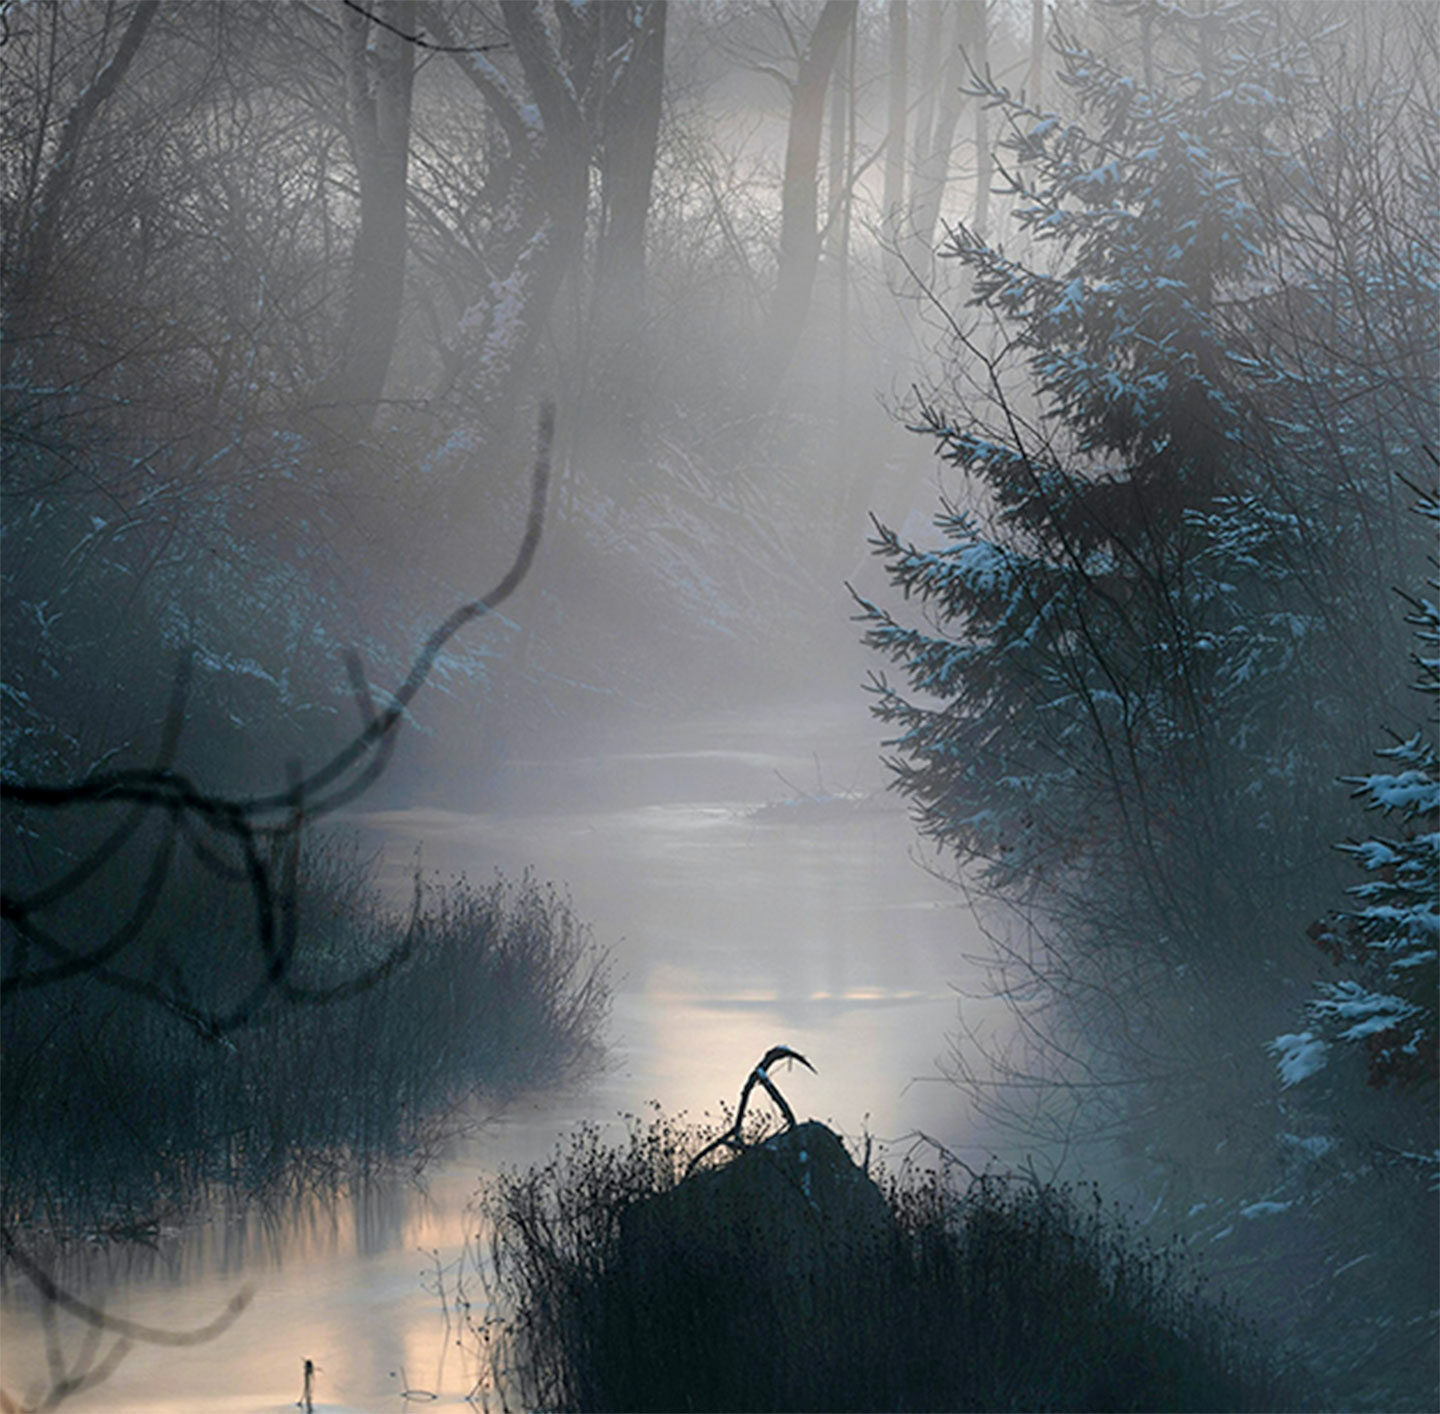 Fluss im Wald mit Nebel